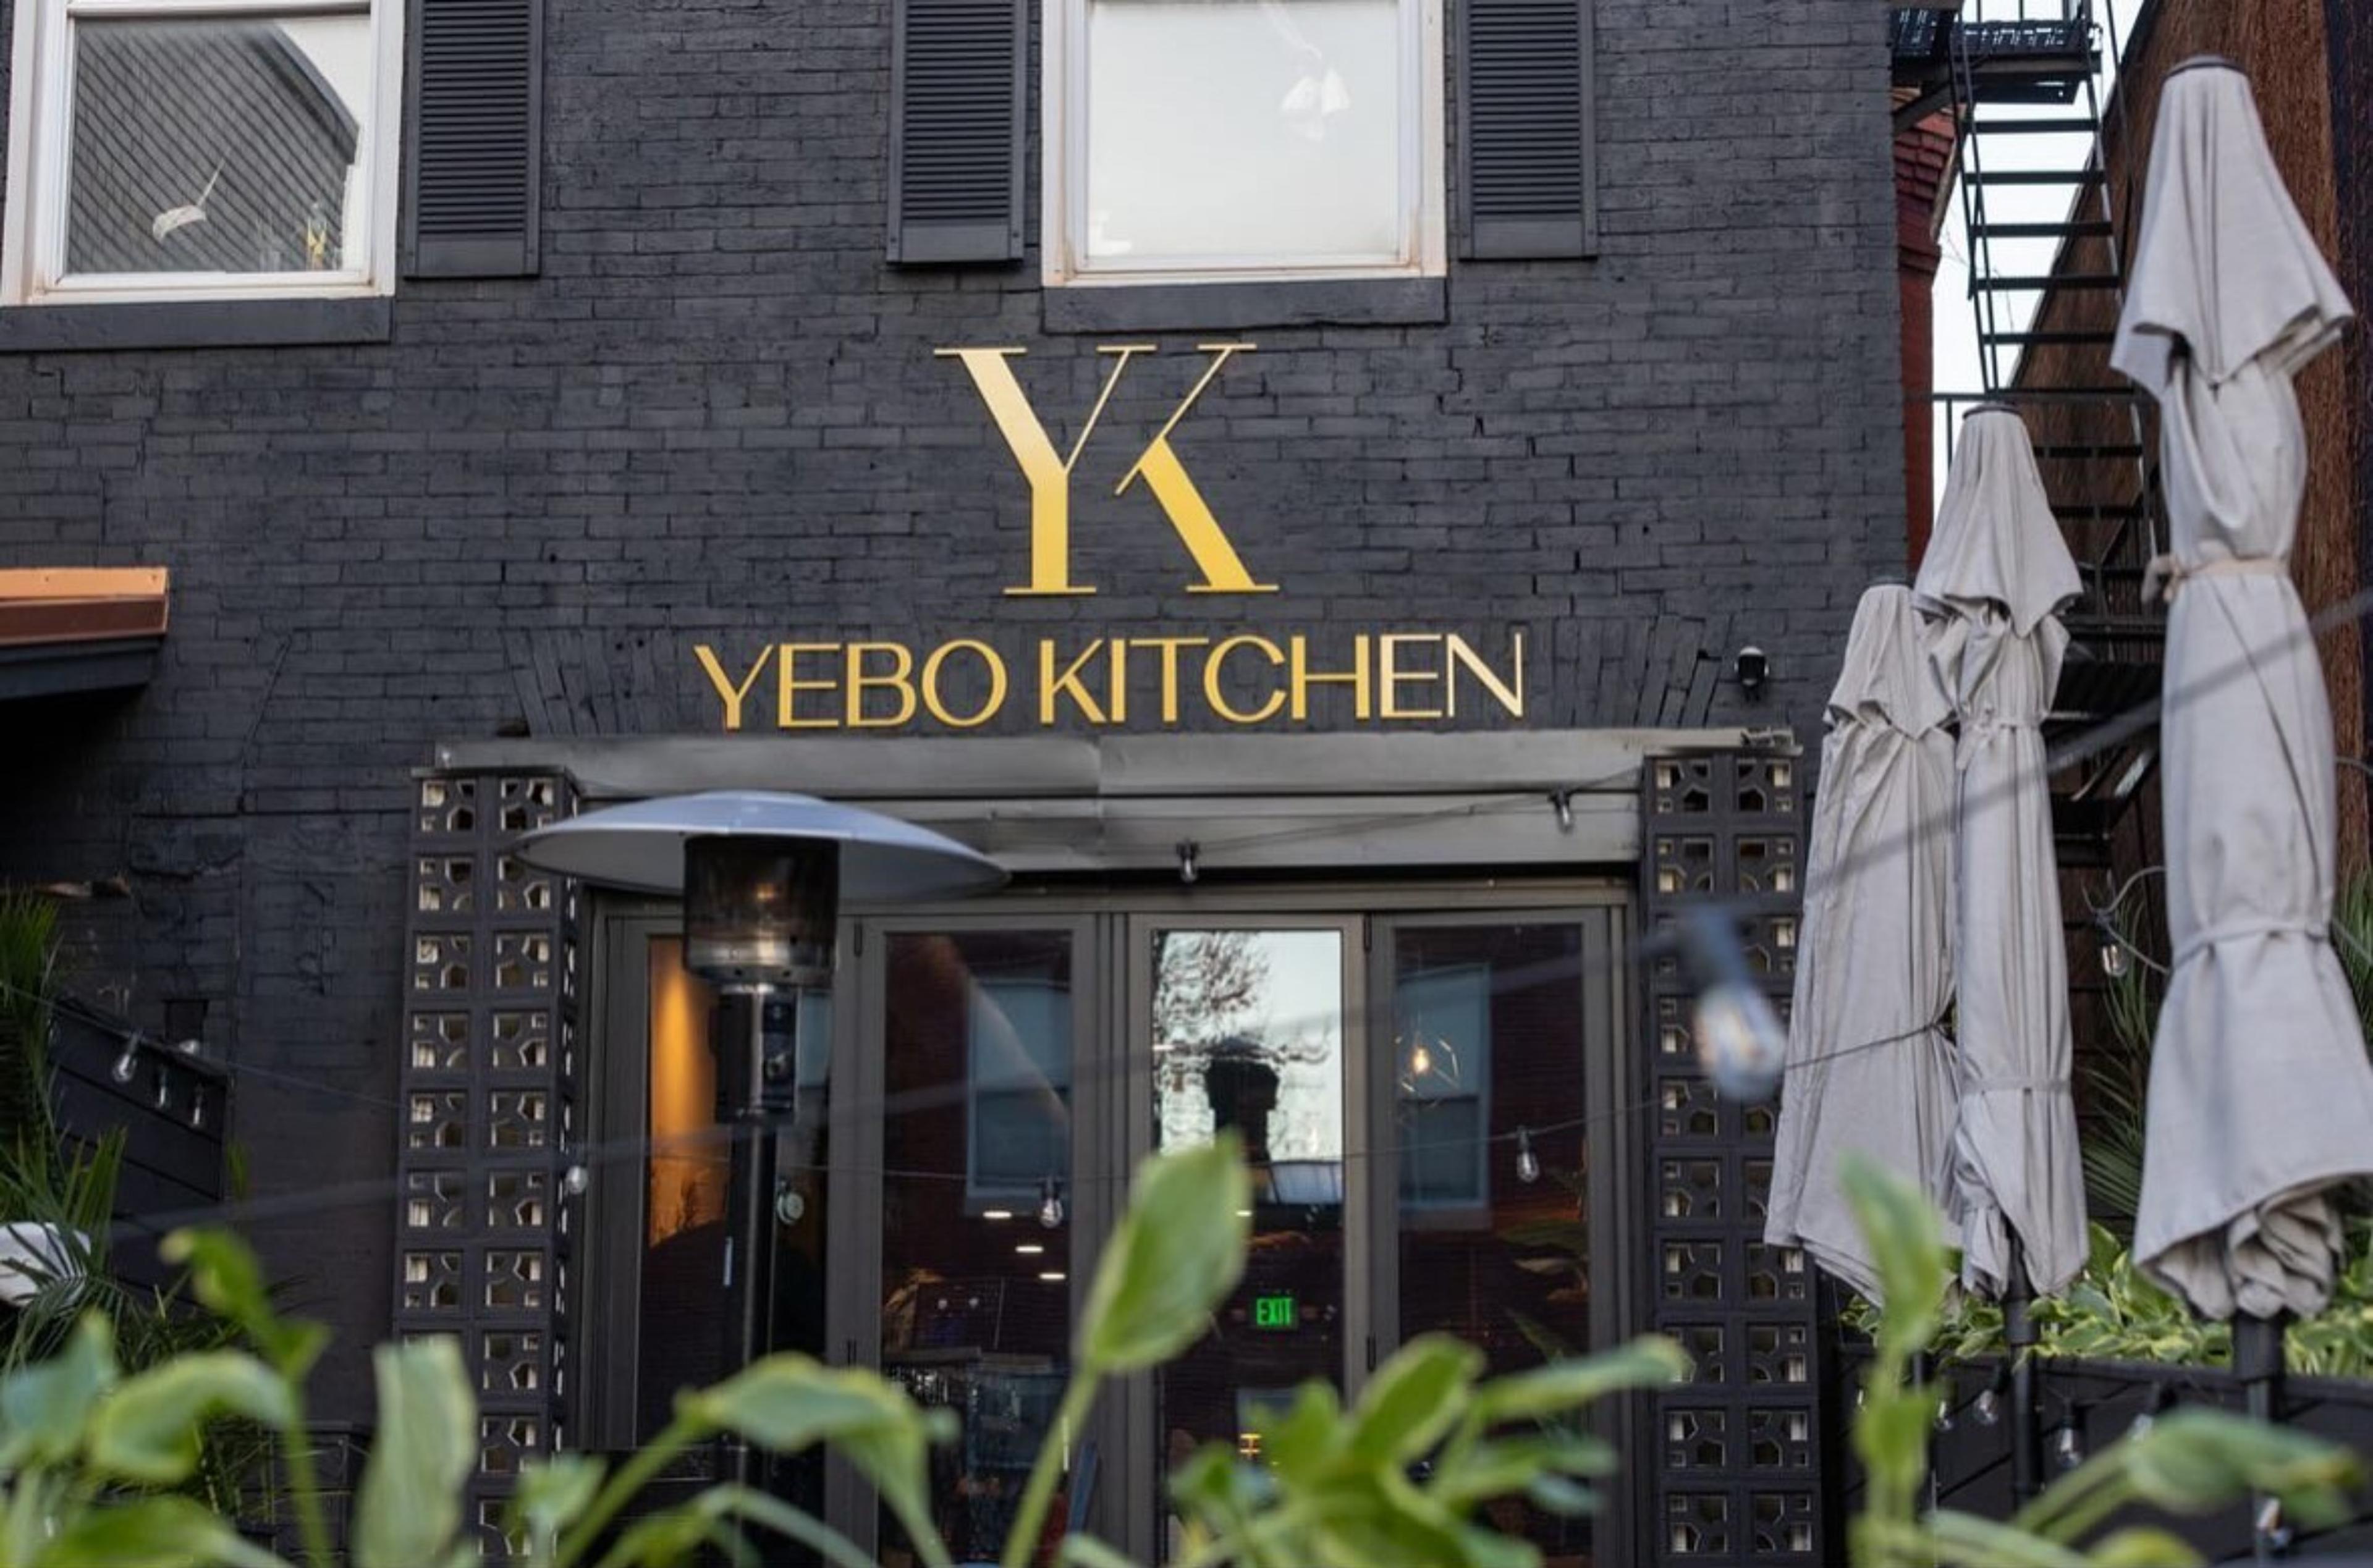 Yebo Kitchen